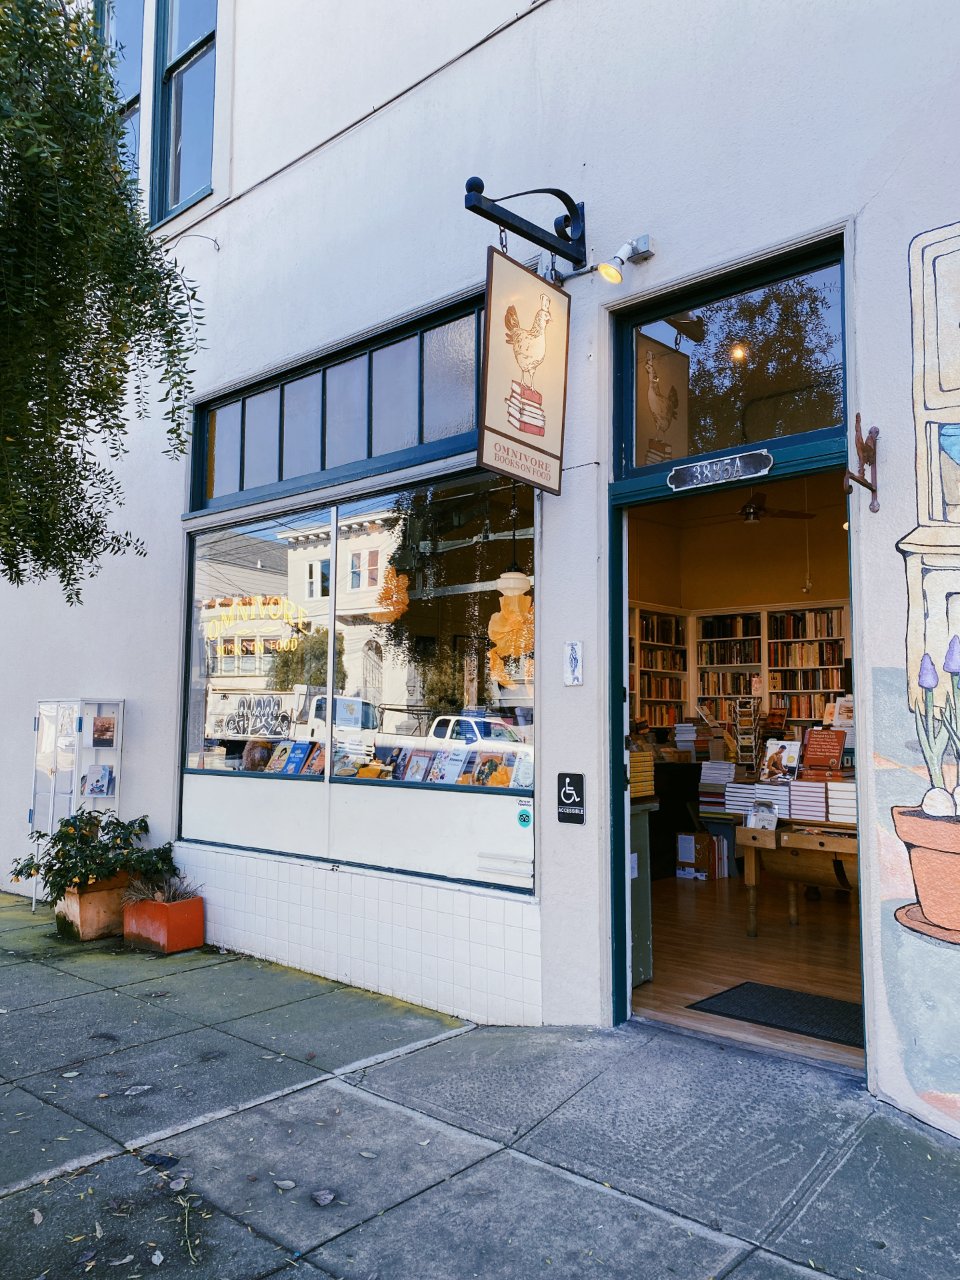 旧金山 📚 只卖烹饪书的书店太酷了...